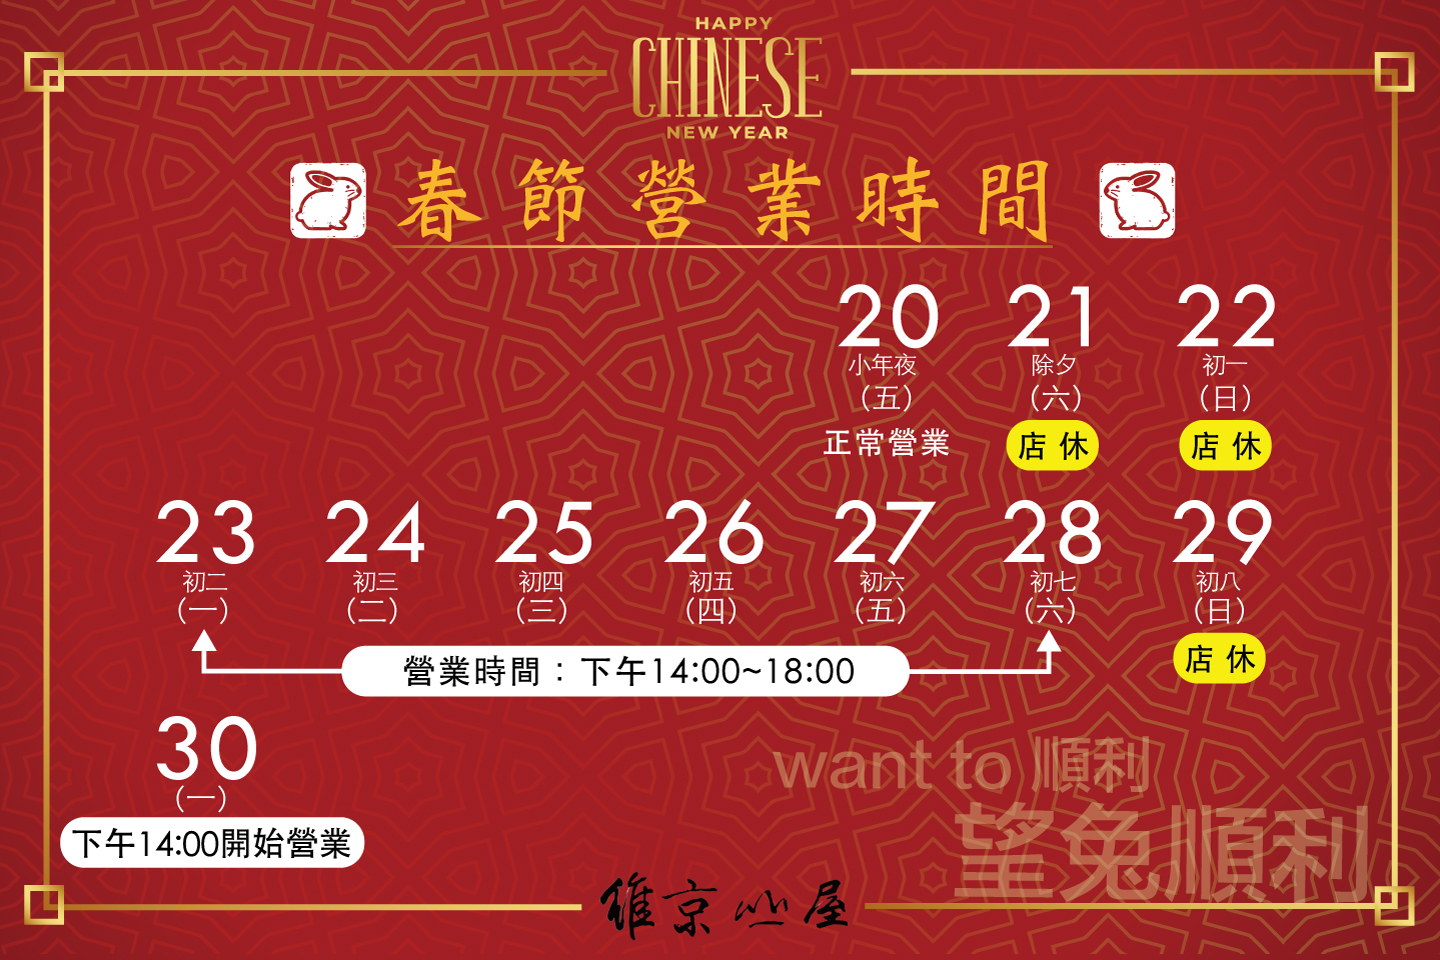 2023-chinese_festival.jpg